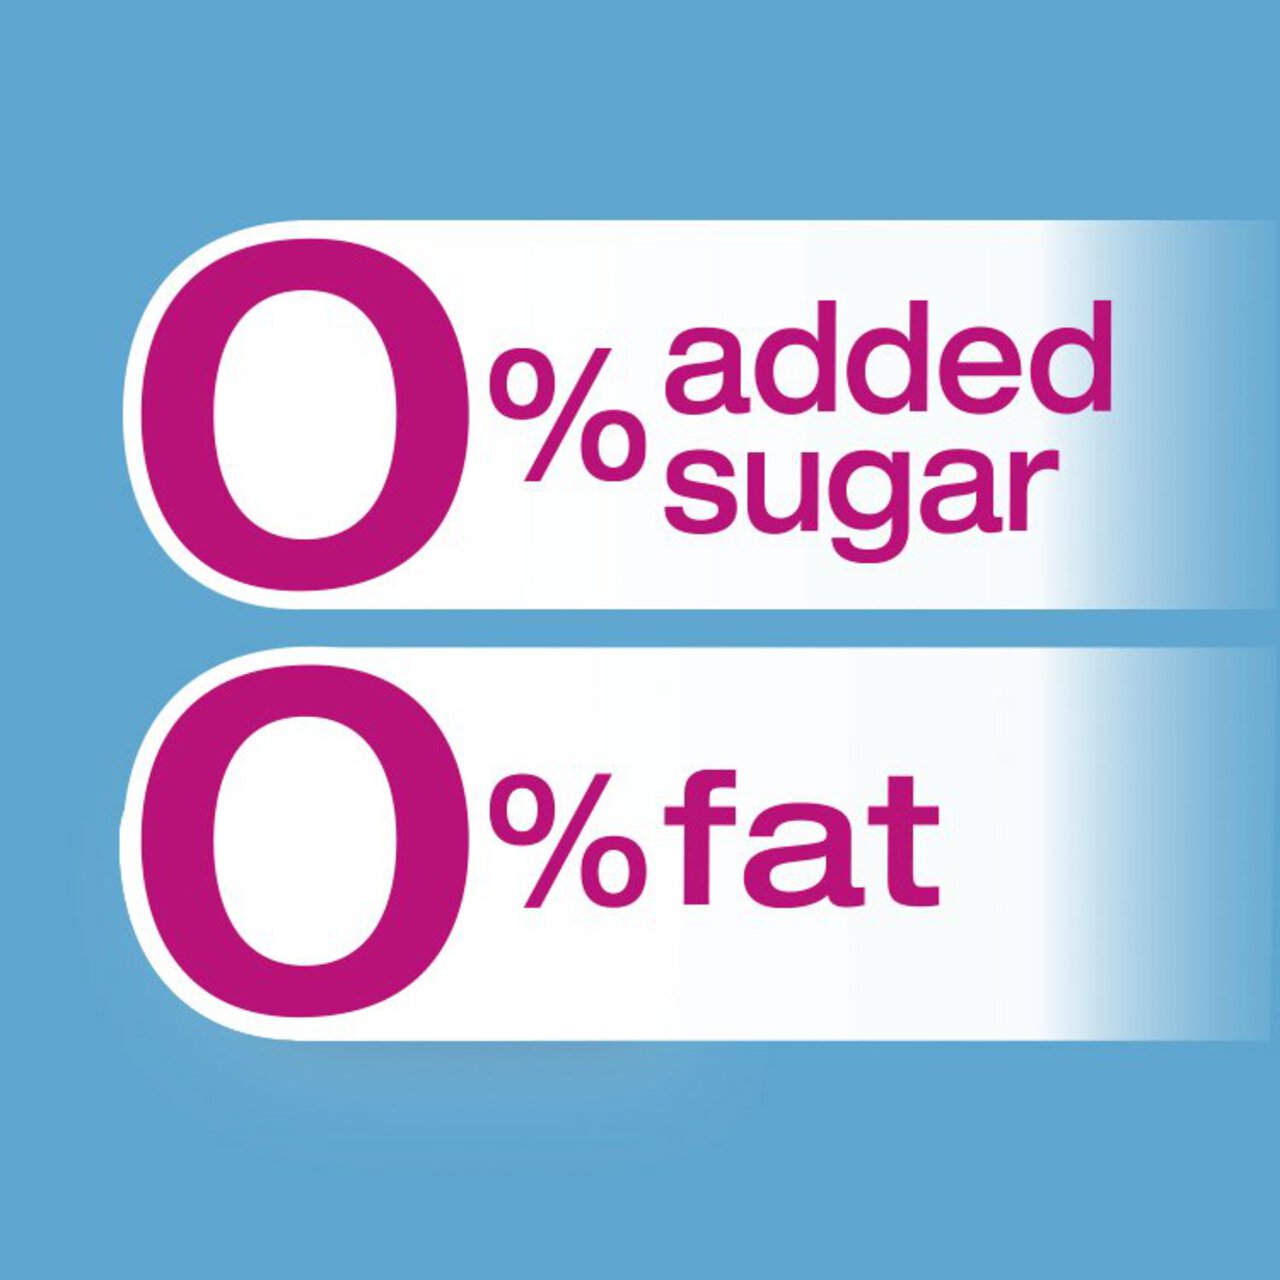 Actimel Strawberry 0% Added Sugar Fat Free Yoghurt Drink 8 x 100g